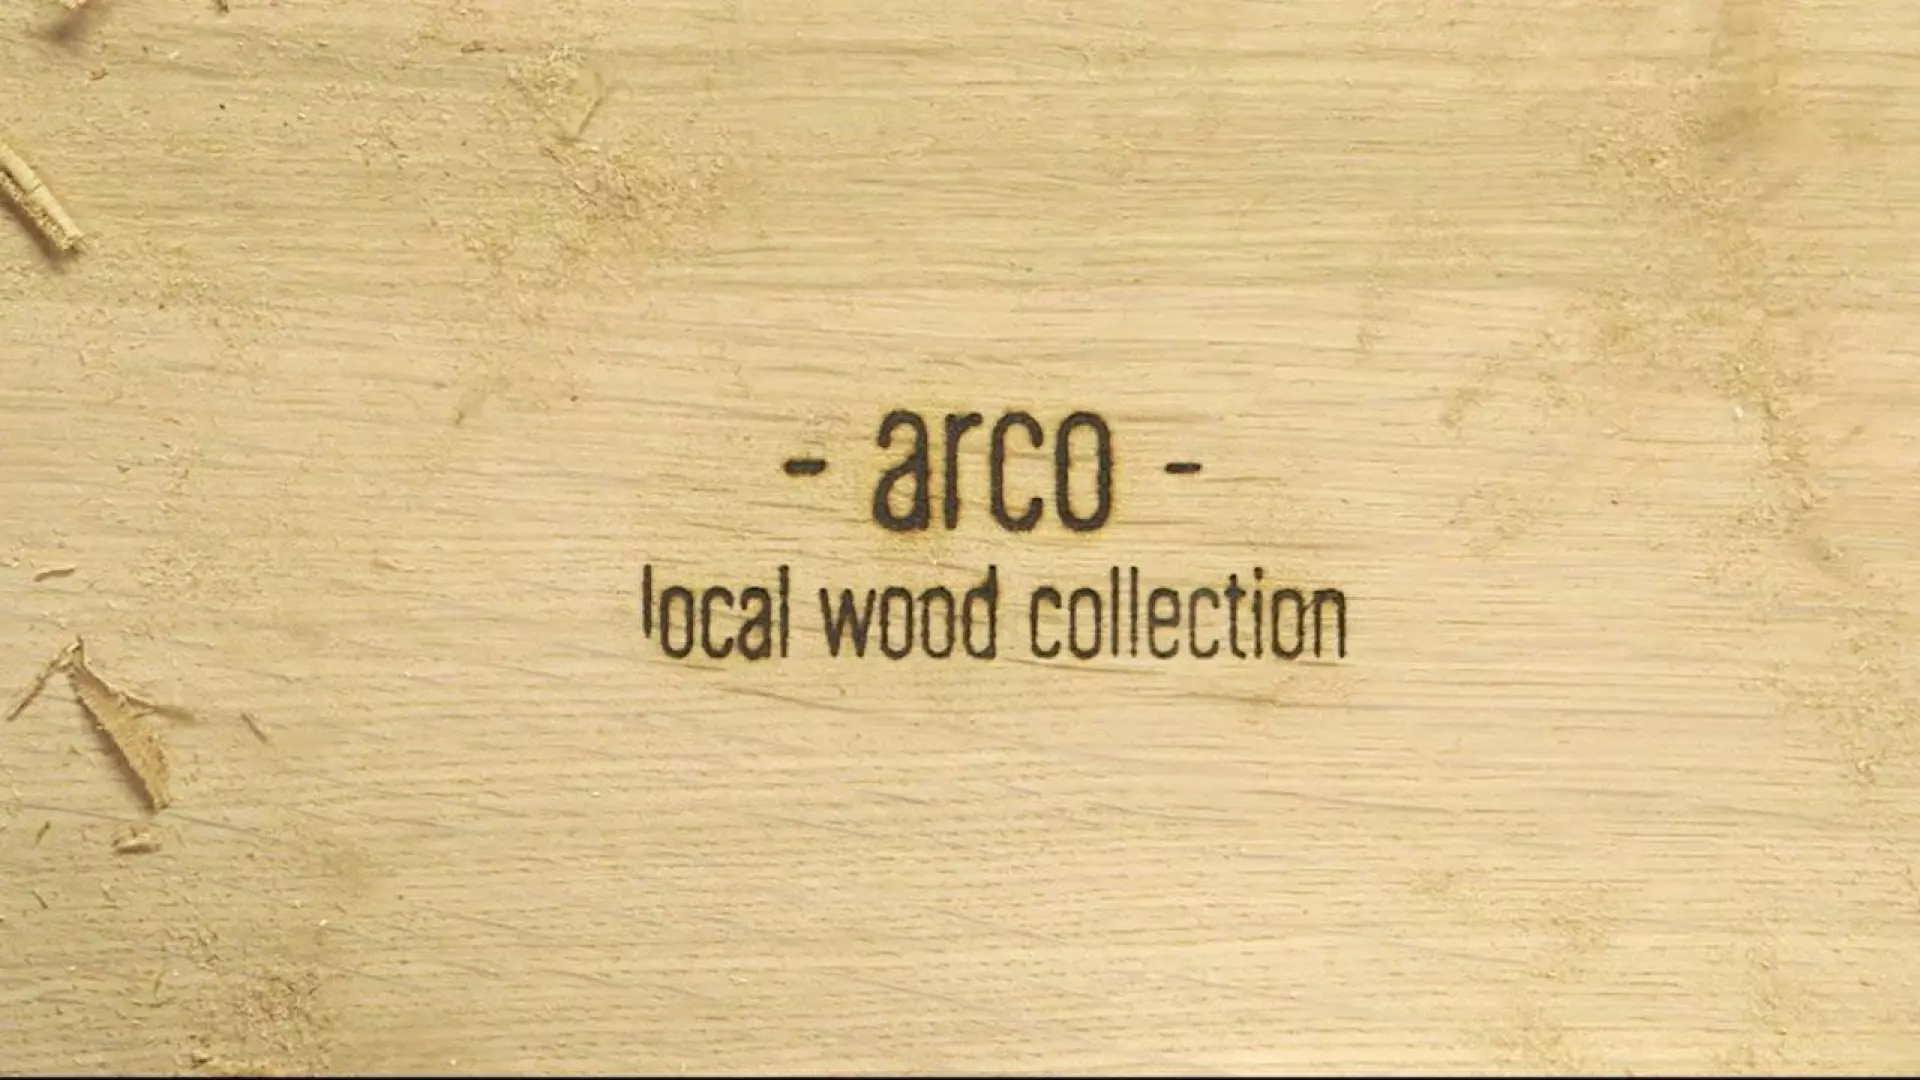 Vanderlindeinterieur_Arco local wood collection